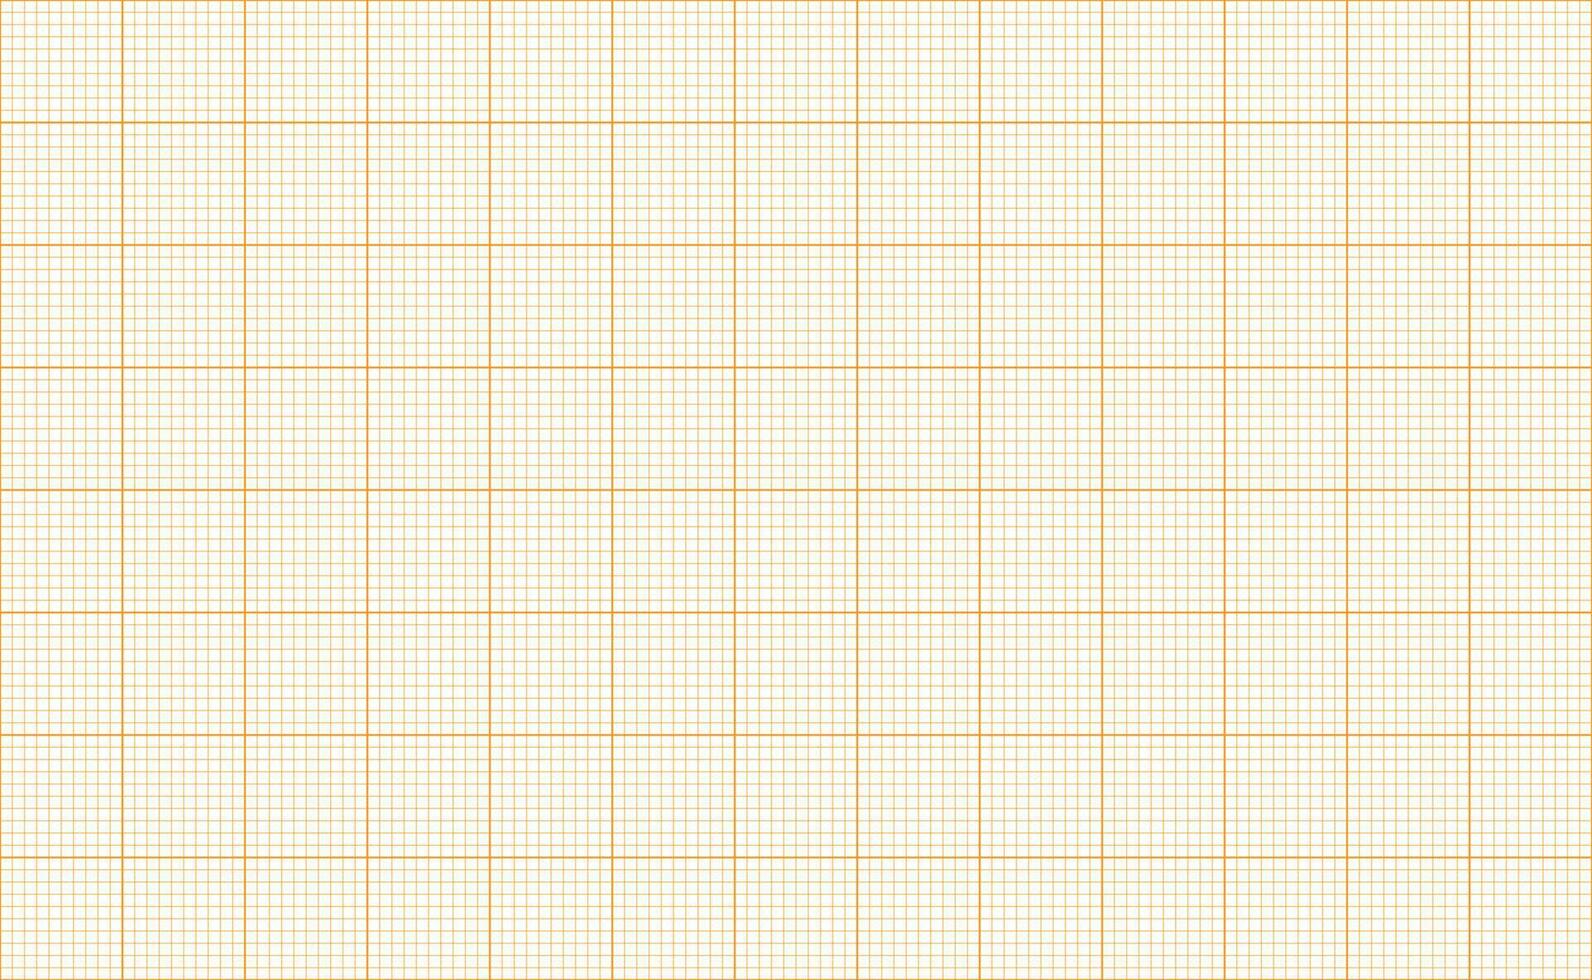 millimeter rooster. plein diagram papier achtergrond. naadloos patroon. vector illustratie